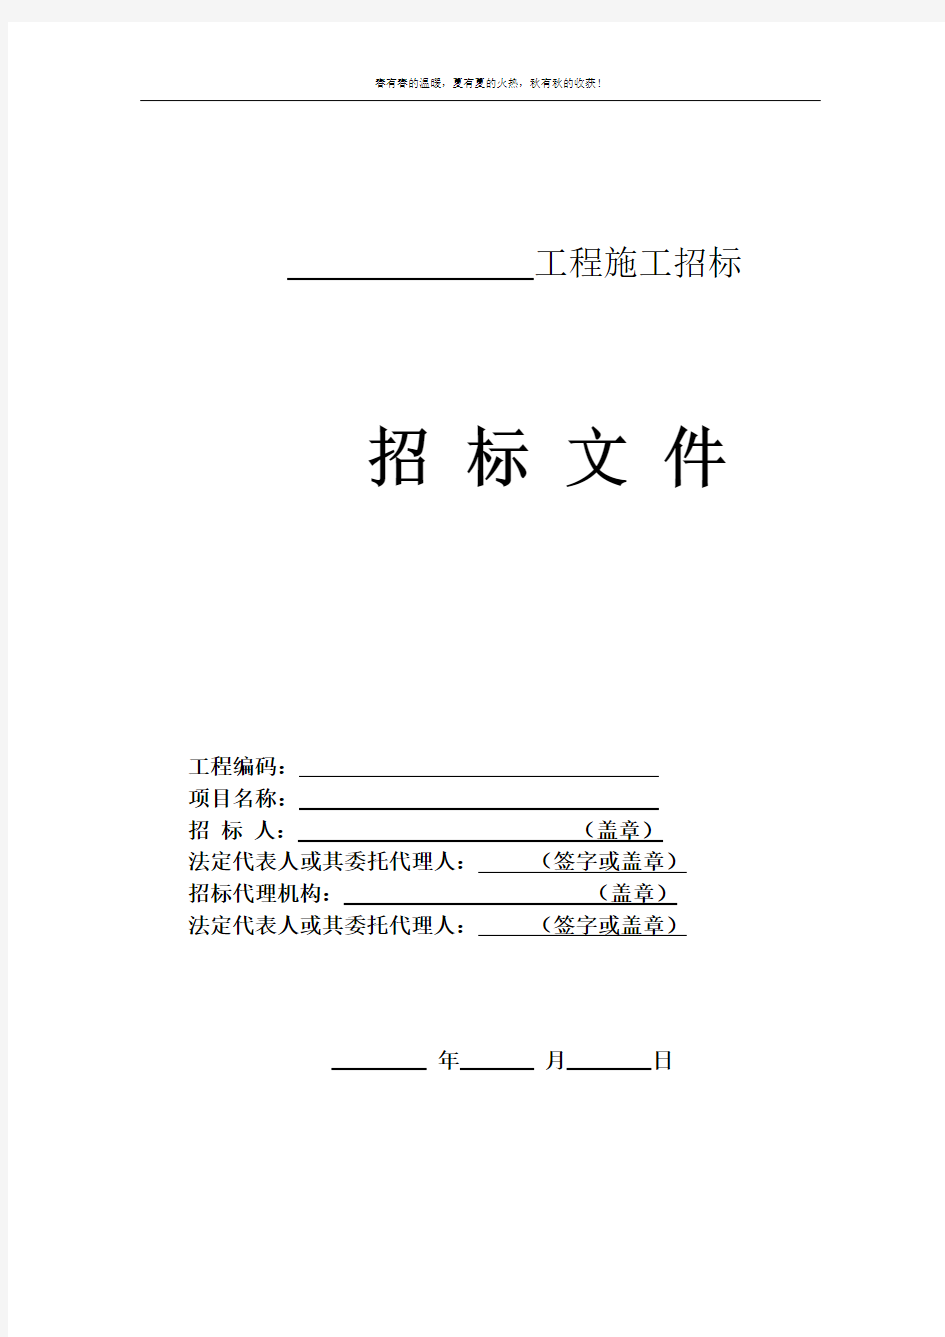 河北省房屋建筑和市政基础设施工程施工招标文件示范文本(公开招标)(2016版)